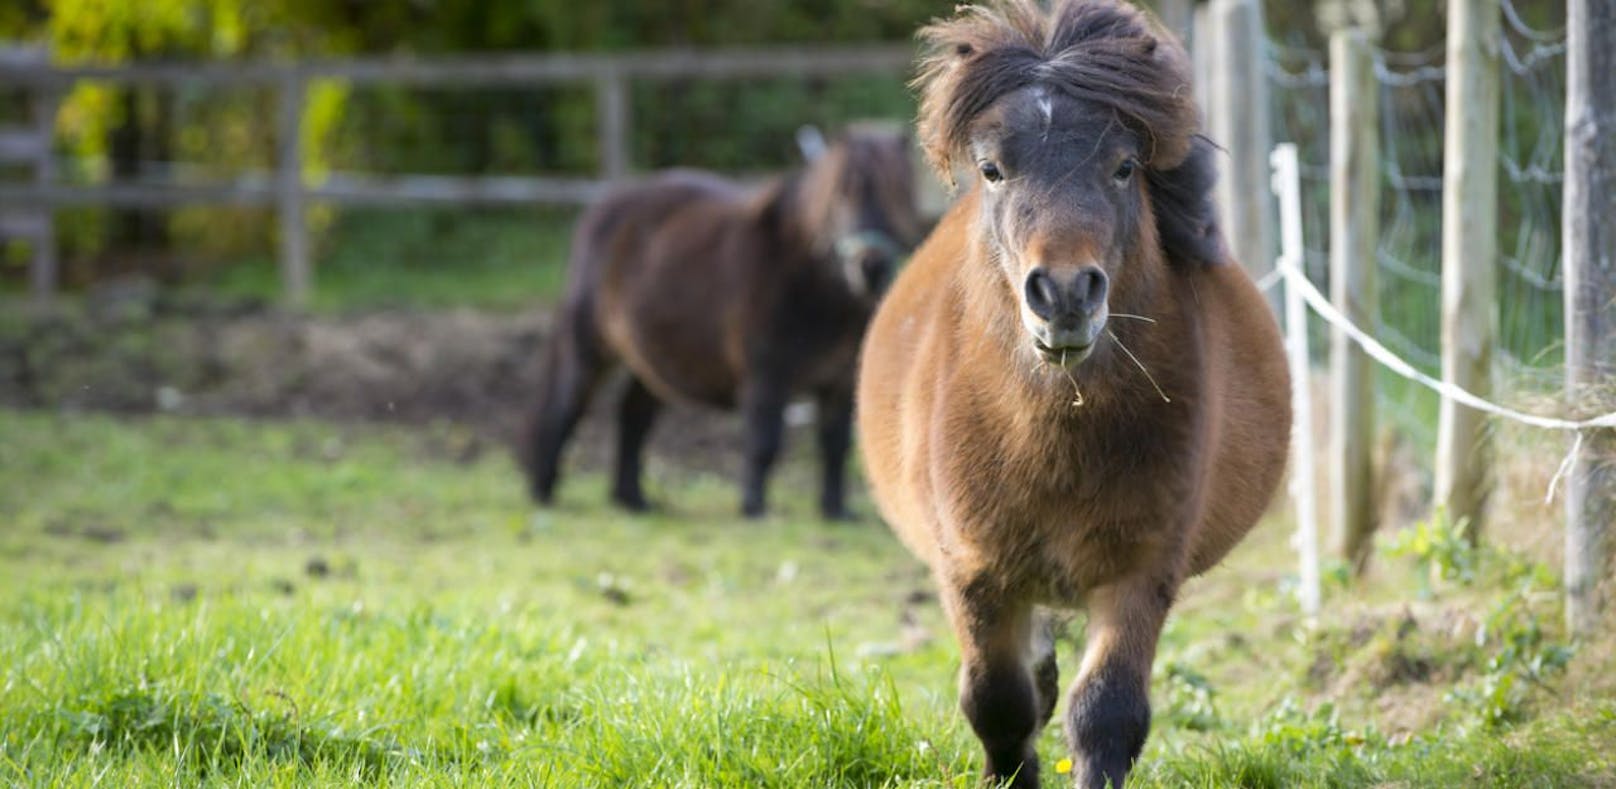 Zwei Ponys wurden in Deutschland von einem Unbekannten gequält. (Symbolfoto)